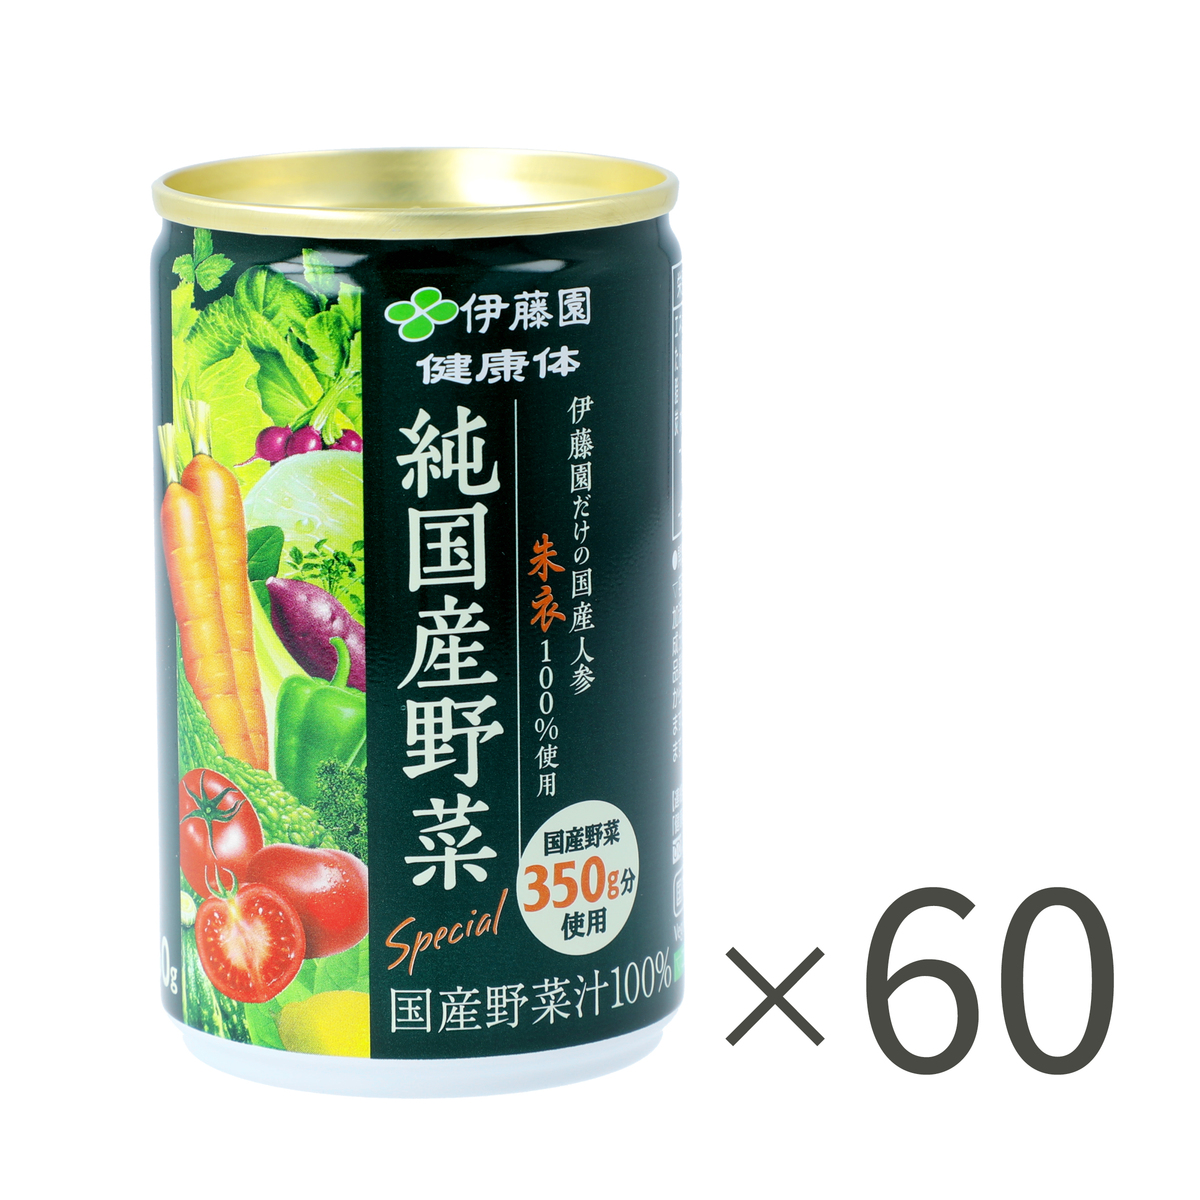 伊藤園健康体 1日分の純国産野菜160g×60本 伊藤園 - QVC.jp